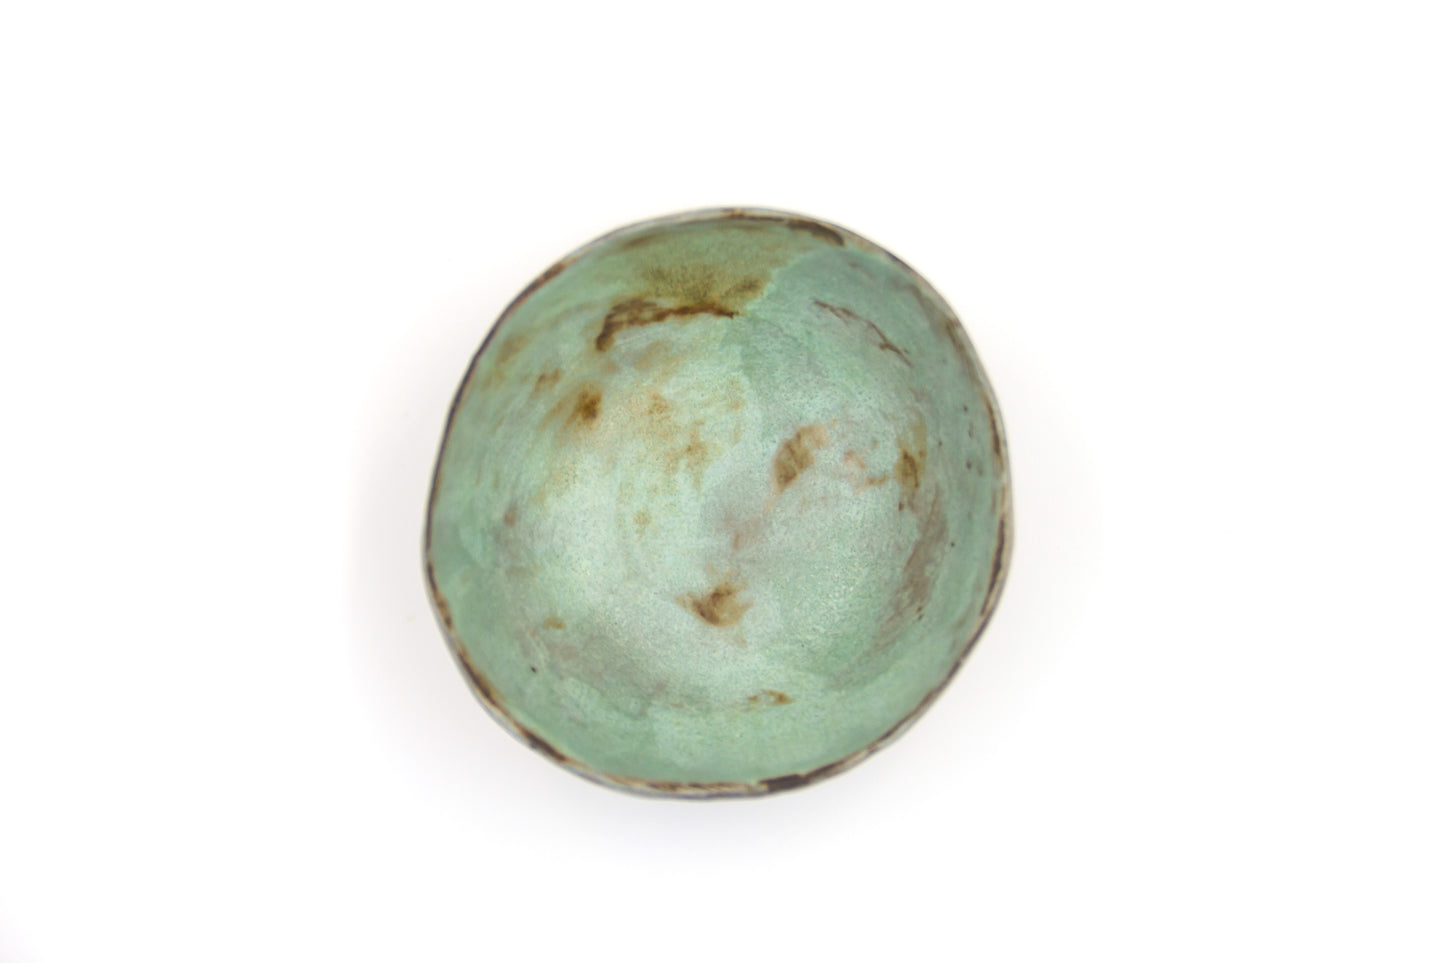 Miska ceramiczna w kolorze zielono-brązowym